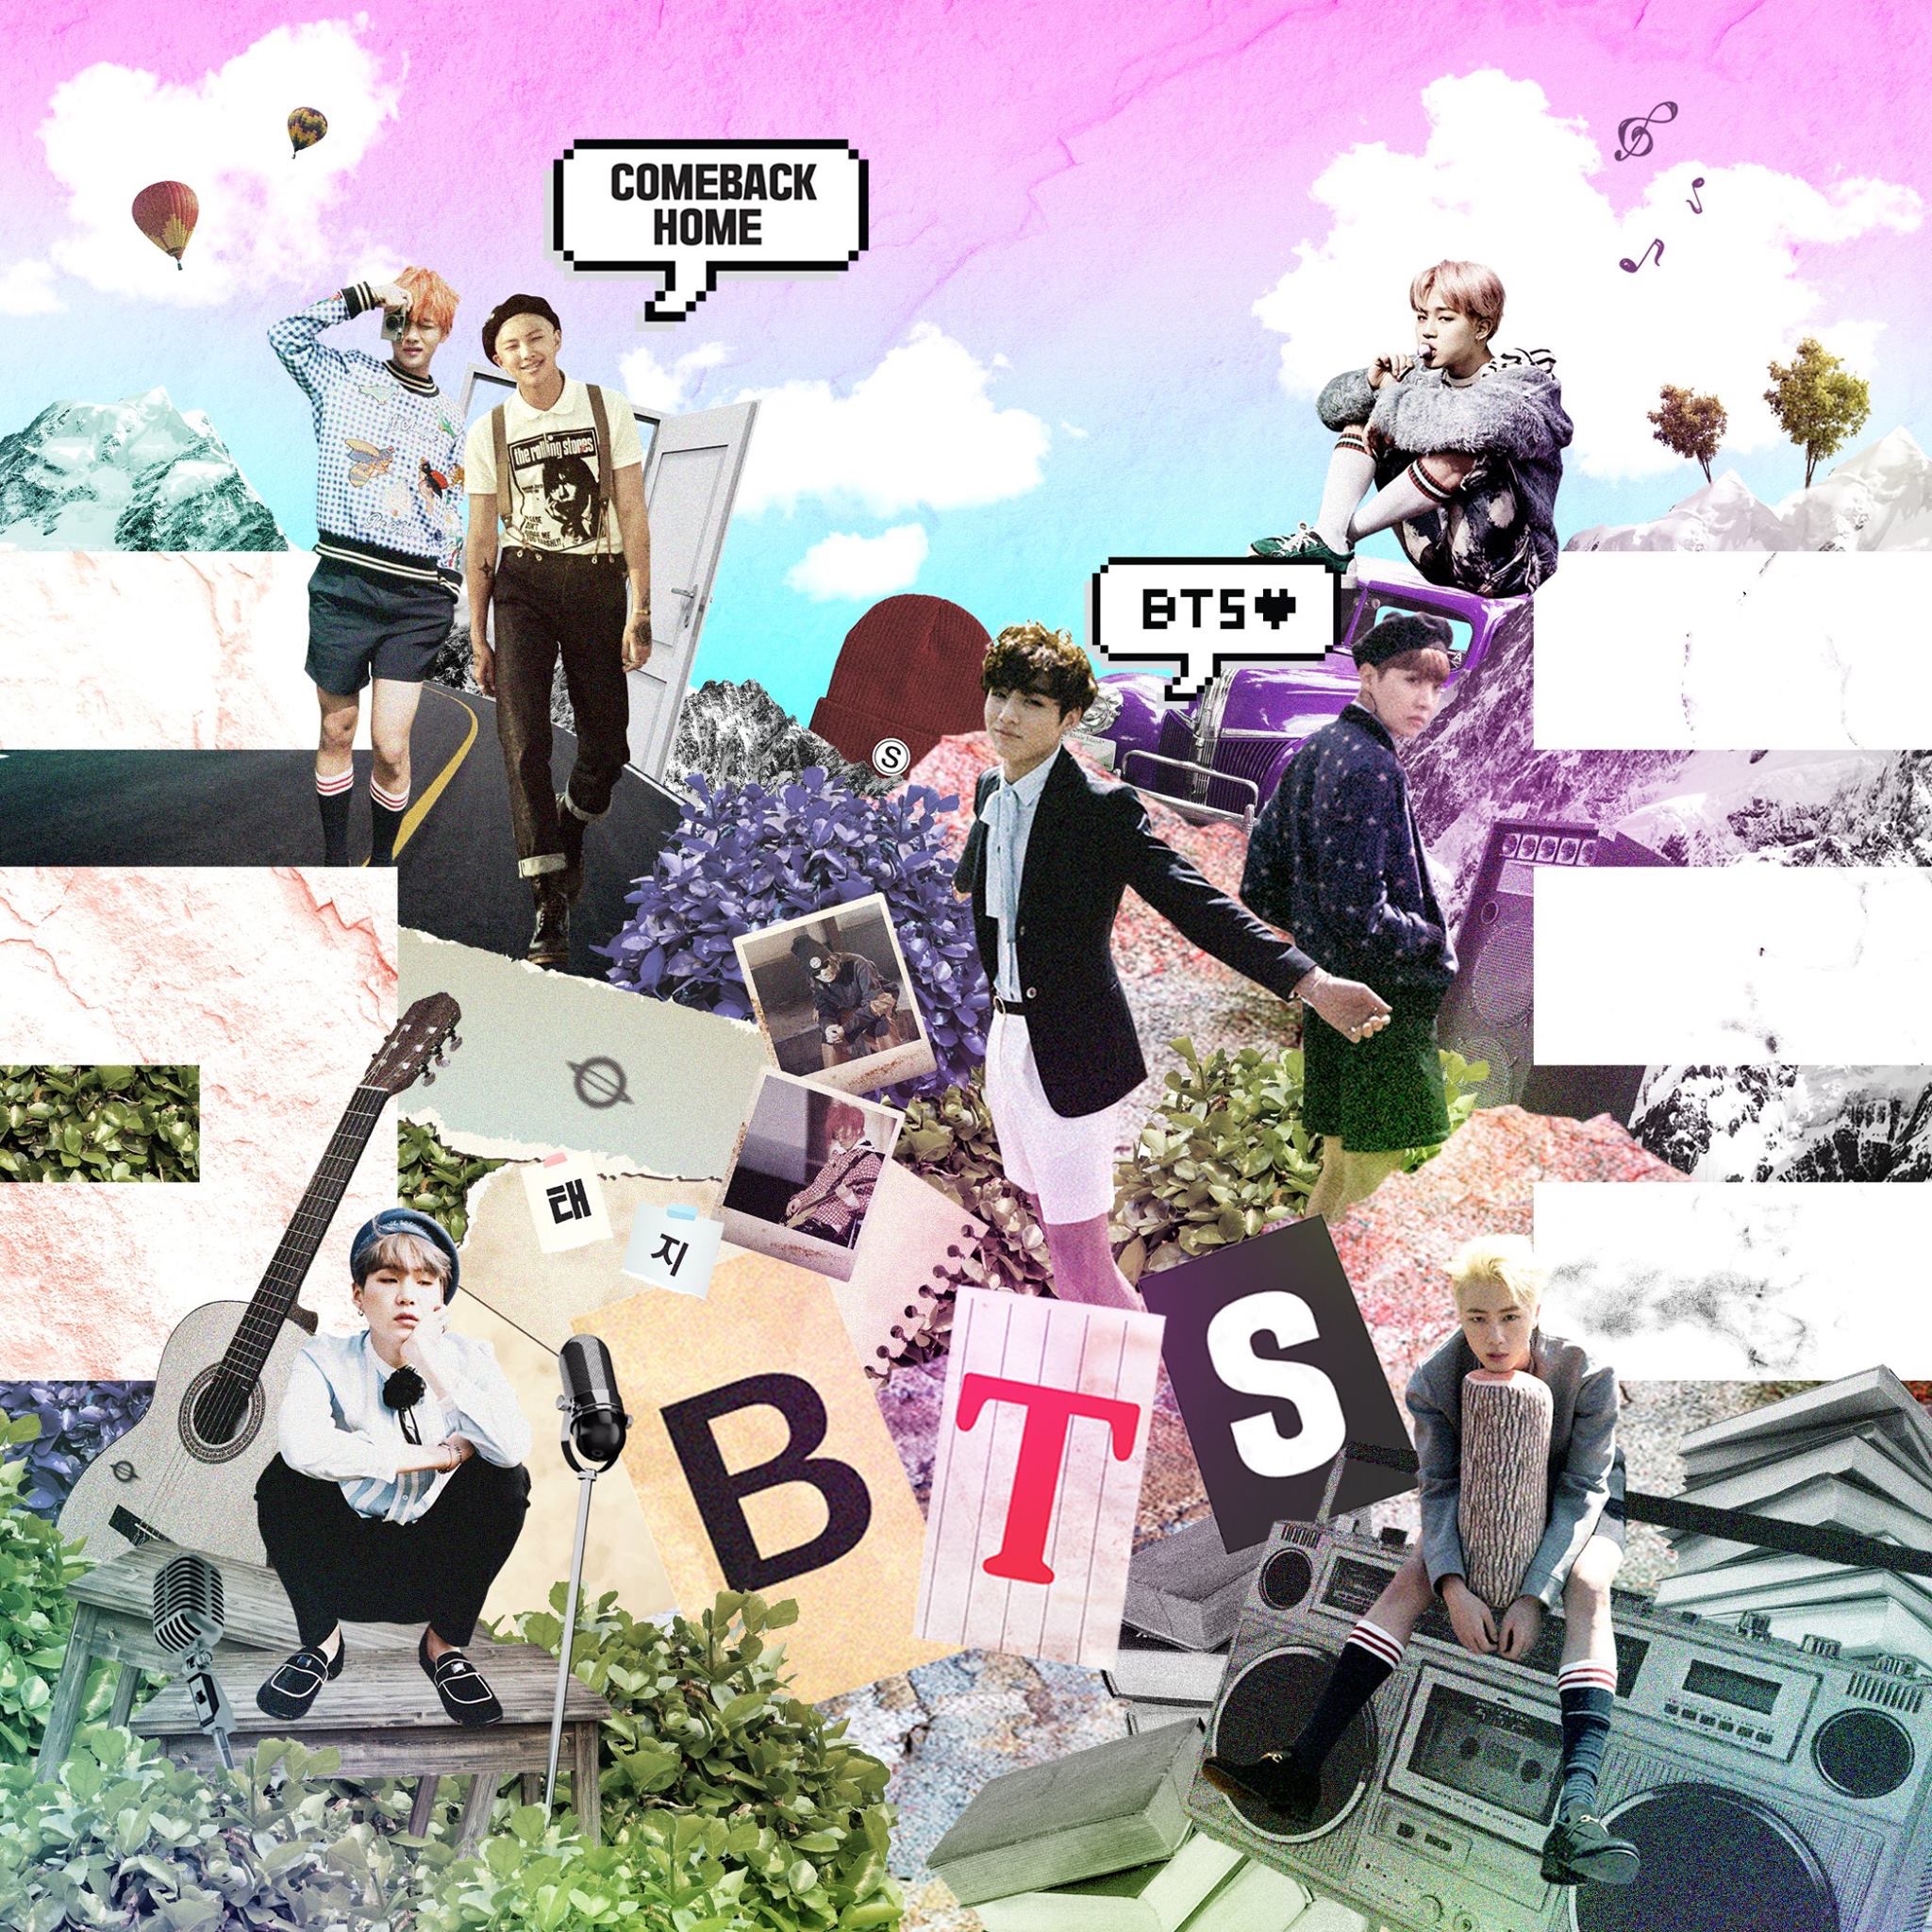 Combined sales of BTS' album 'Journey' top 500,000 units in Japan